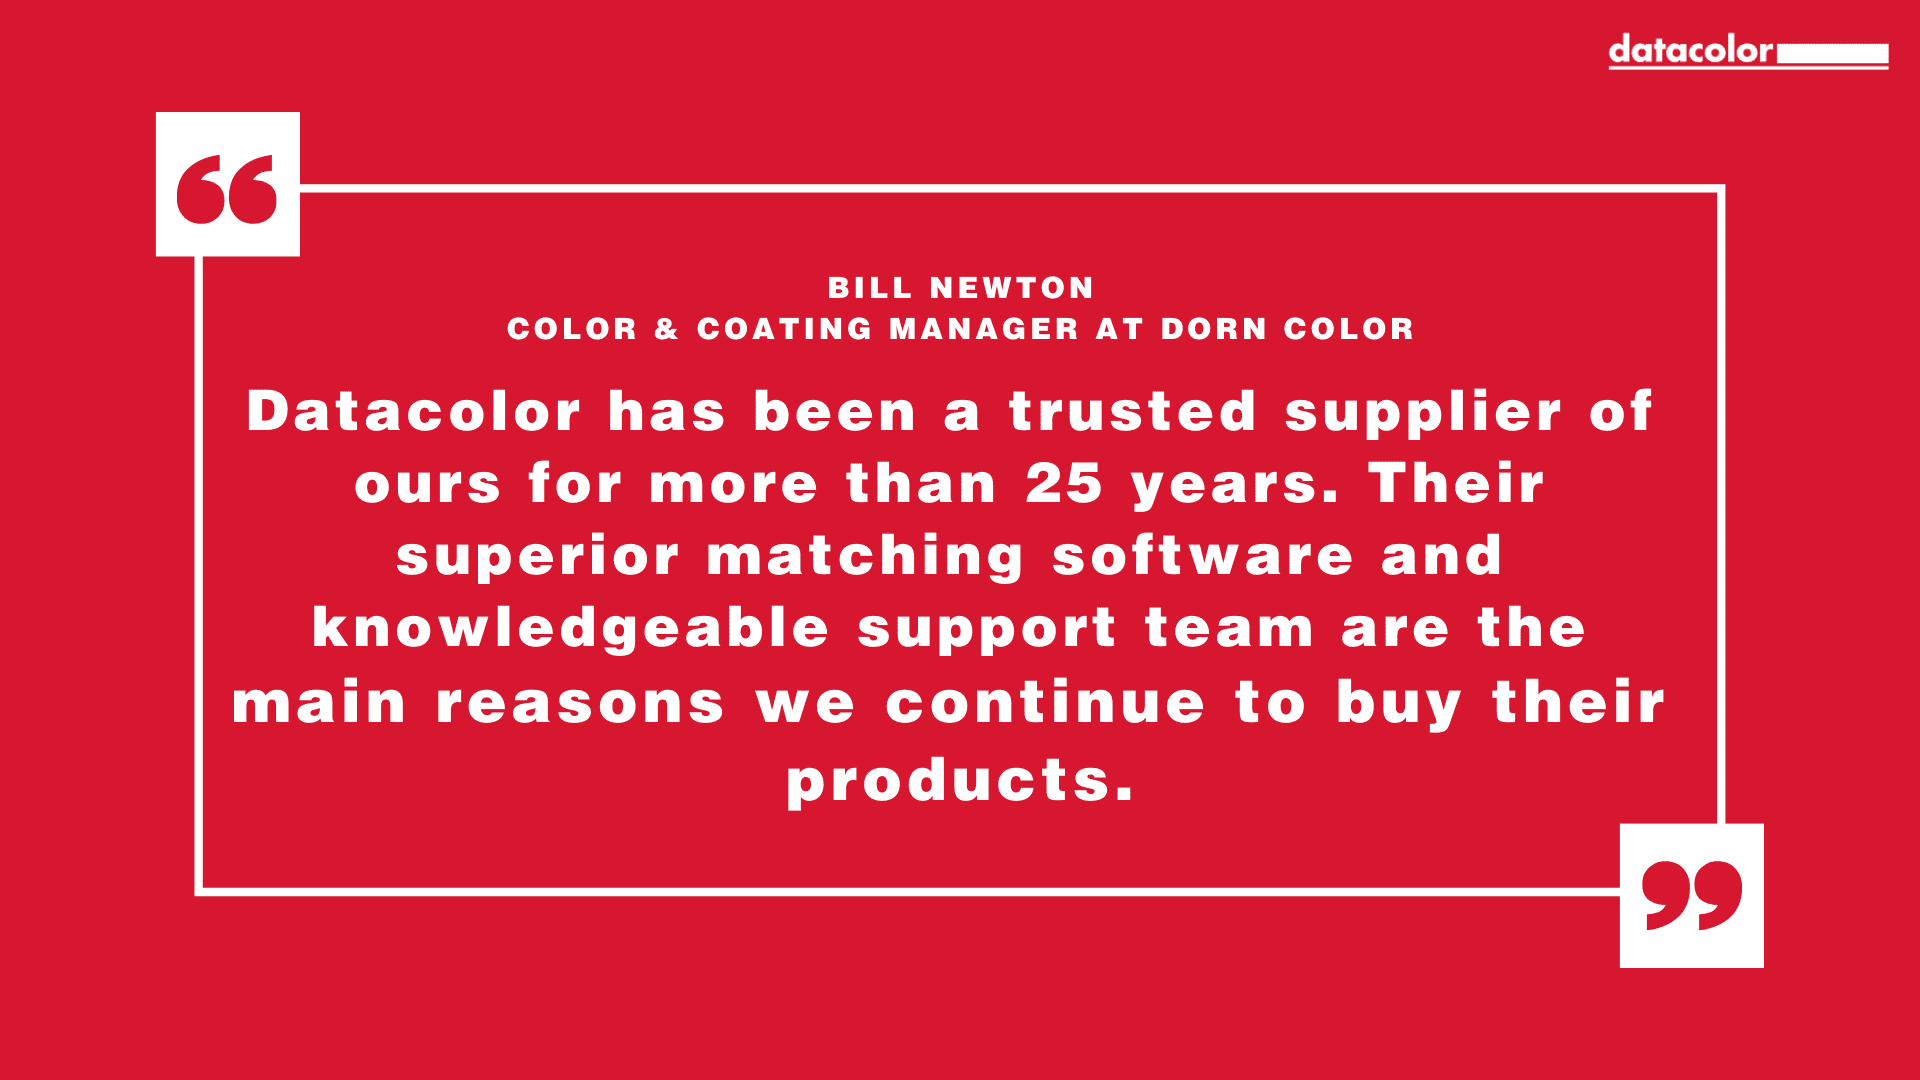 Citation de Bill Newton, responsable des couleurs et des revêtements chez Dorn Color